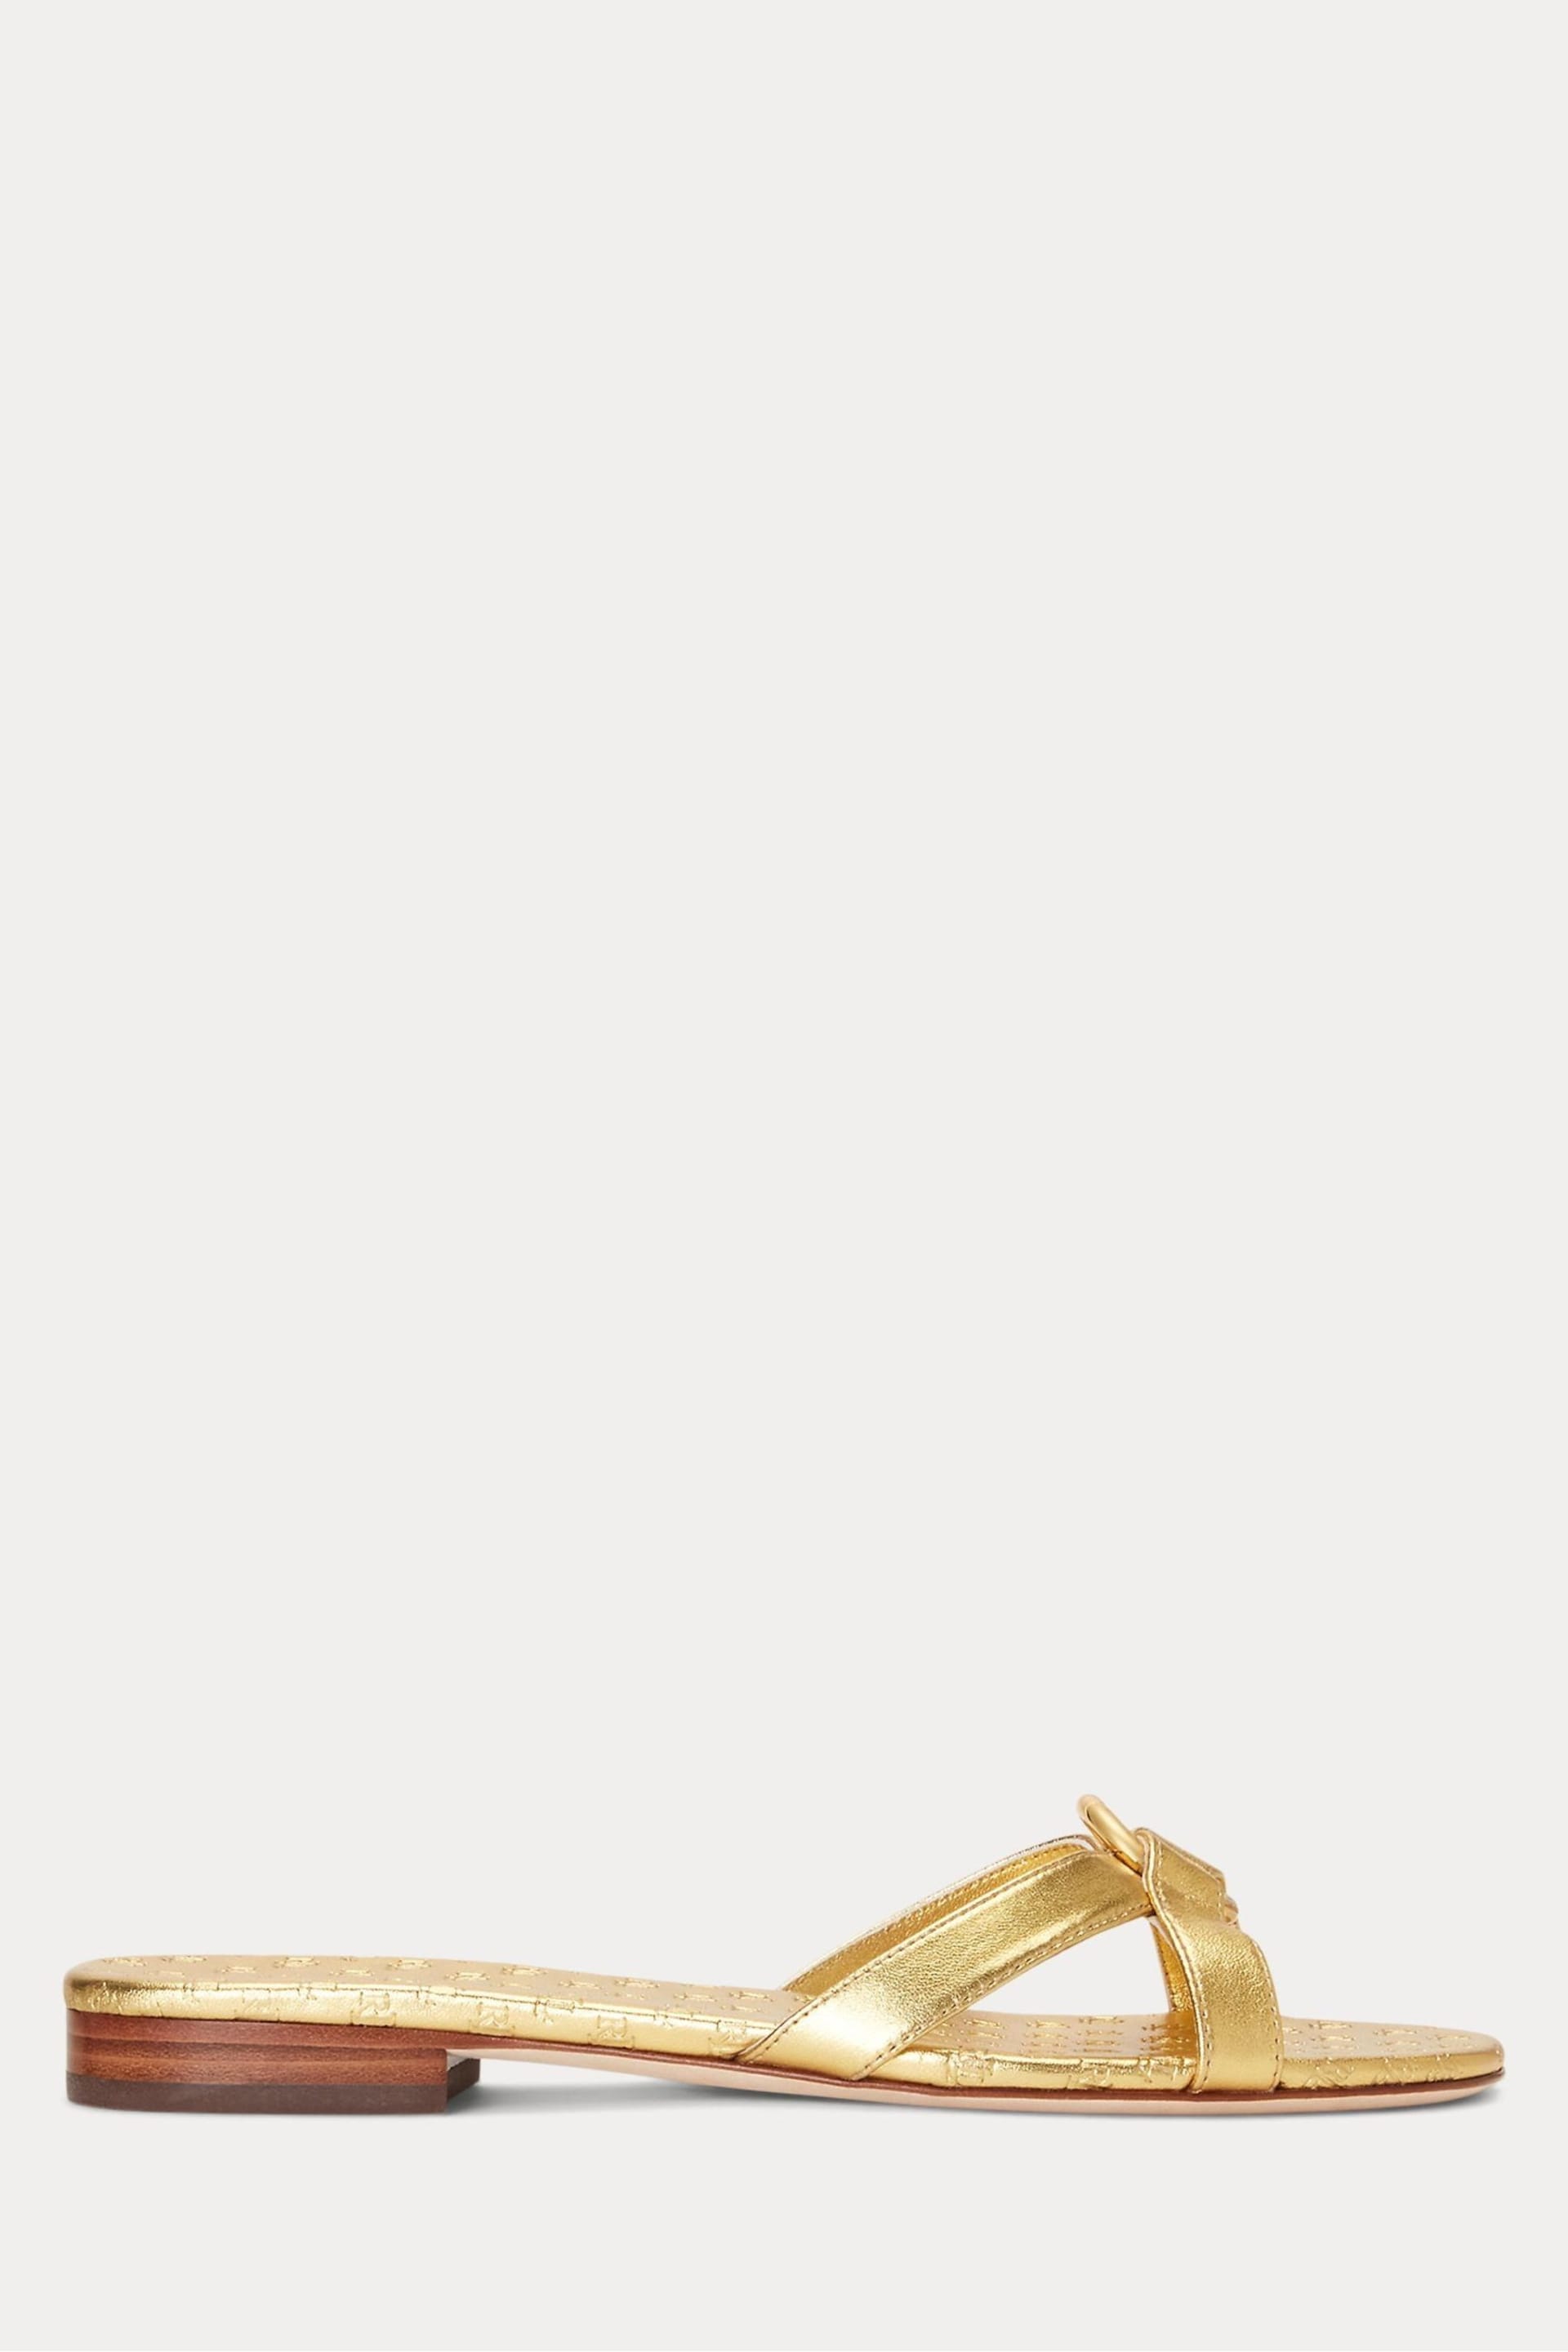 Lauren Ralph Lauren Emmy Crossover Slide Sandals - Image 2 of 4